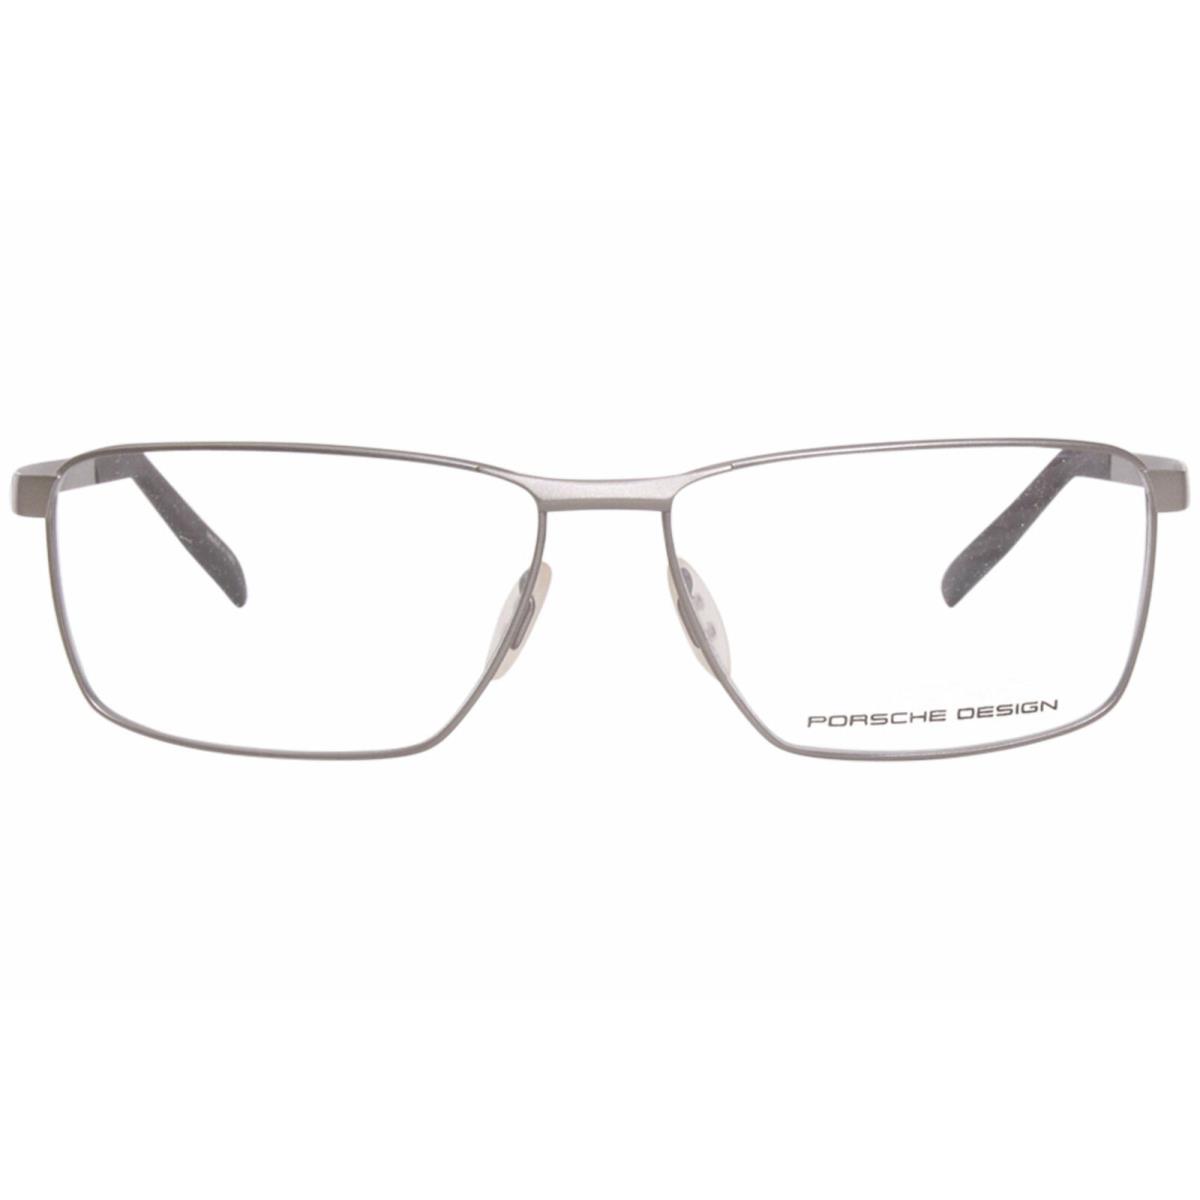 Porsche Design P8302-C Eyeglasses Men`s Silver Full Rim Rectangle Shape 58mm